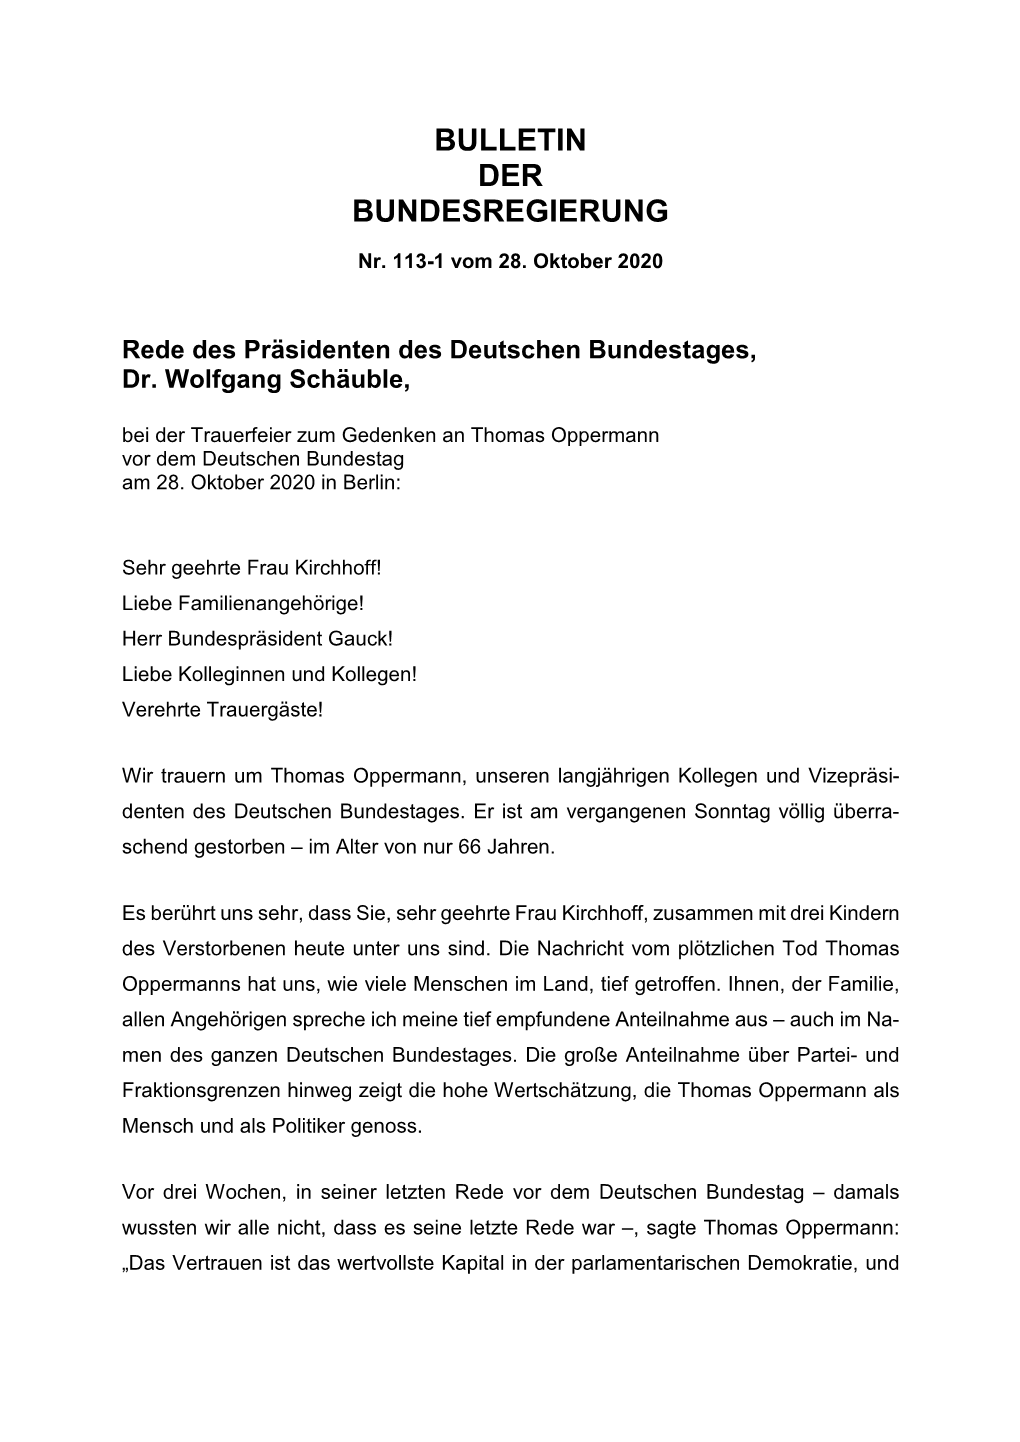 Nr. 113-1 Vom 28.10.2020 Bundestagspräsident Gedenken An